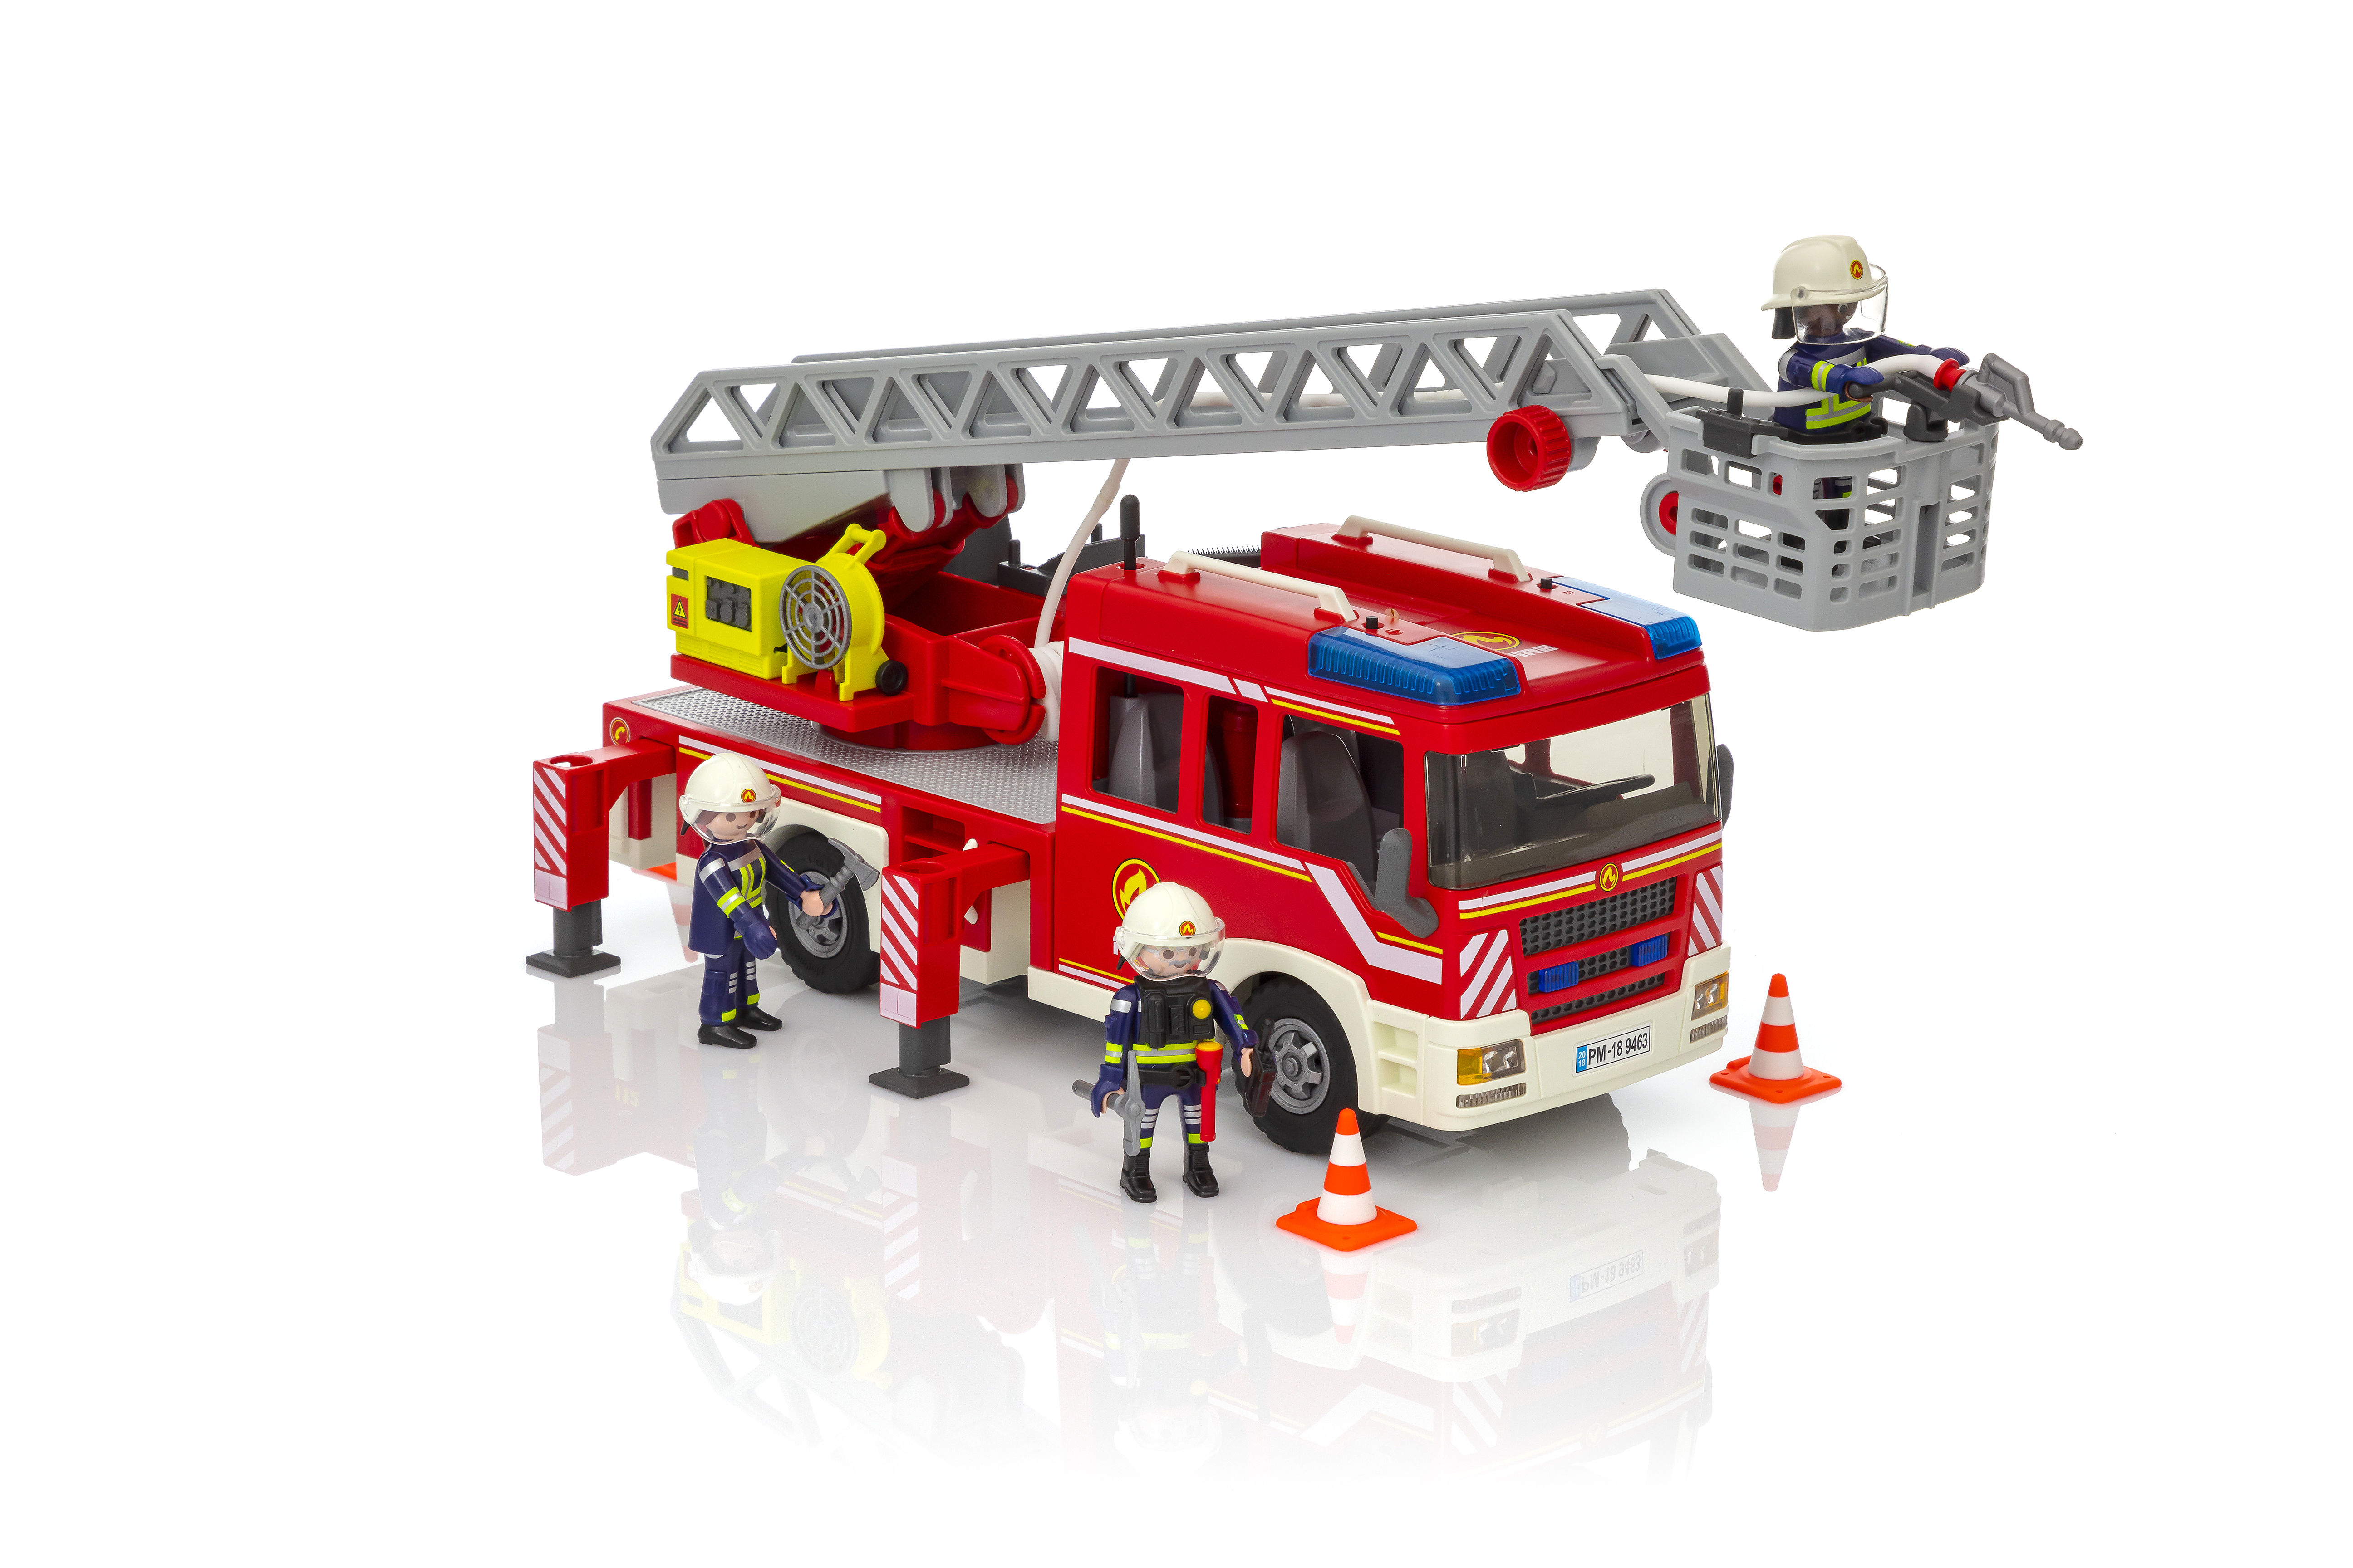 Playmobil - Camion de pompiers avec échelle - Brault & Bouthillier